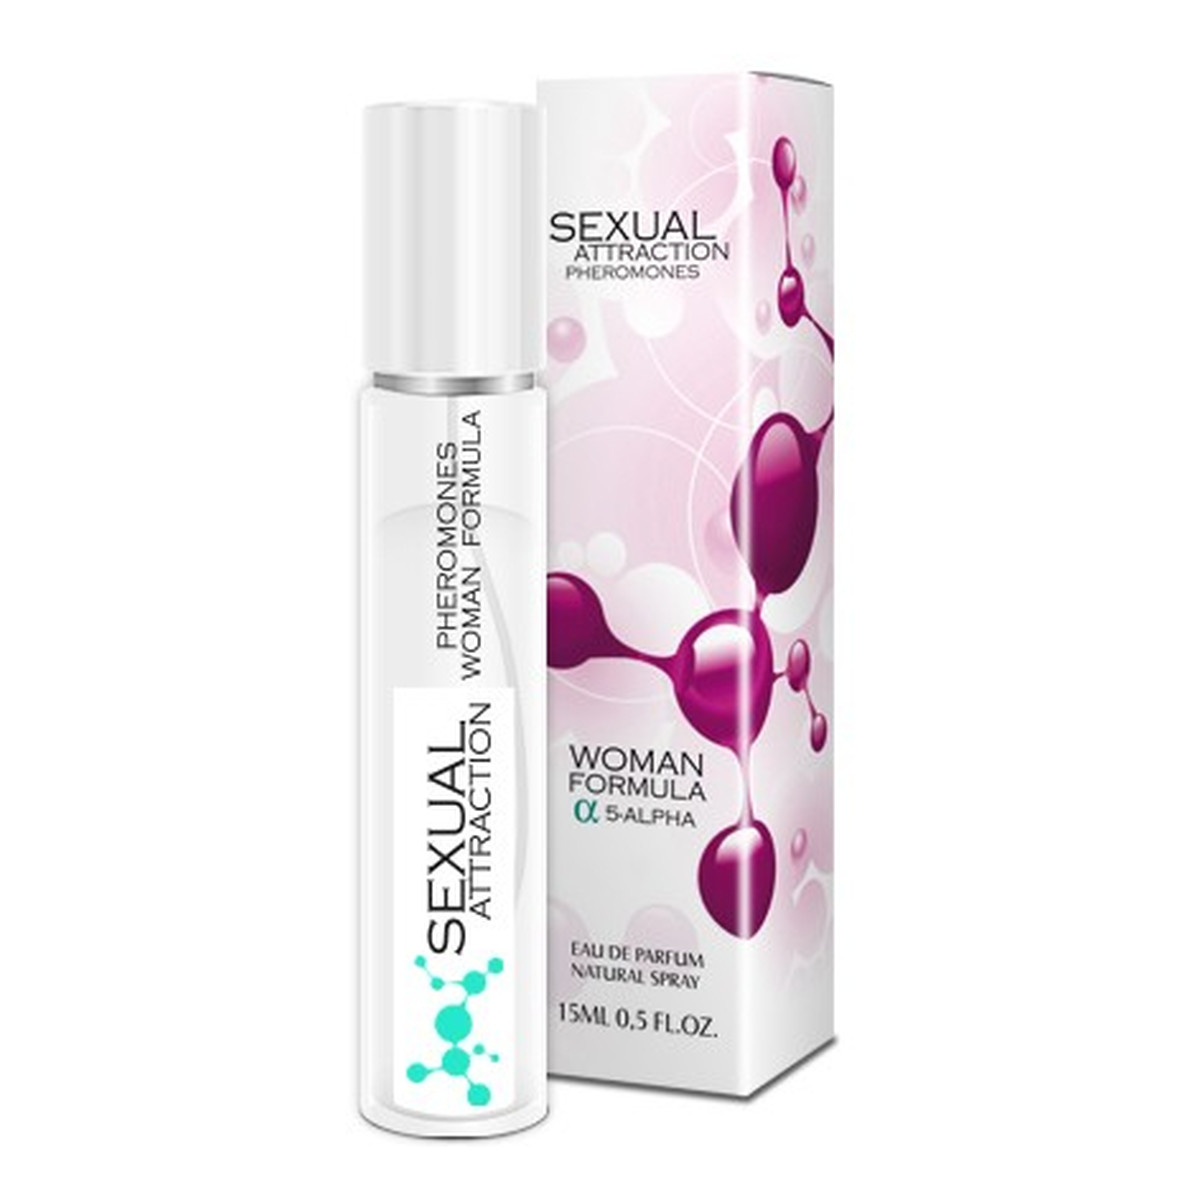 Sexual Attraction Pheromones Woman Formula 5-Alpha feromony dla kobiet Woda perfumowana spray 15ml